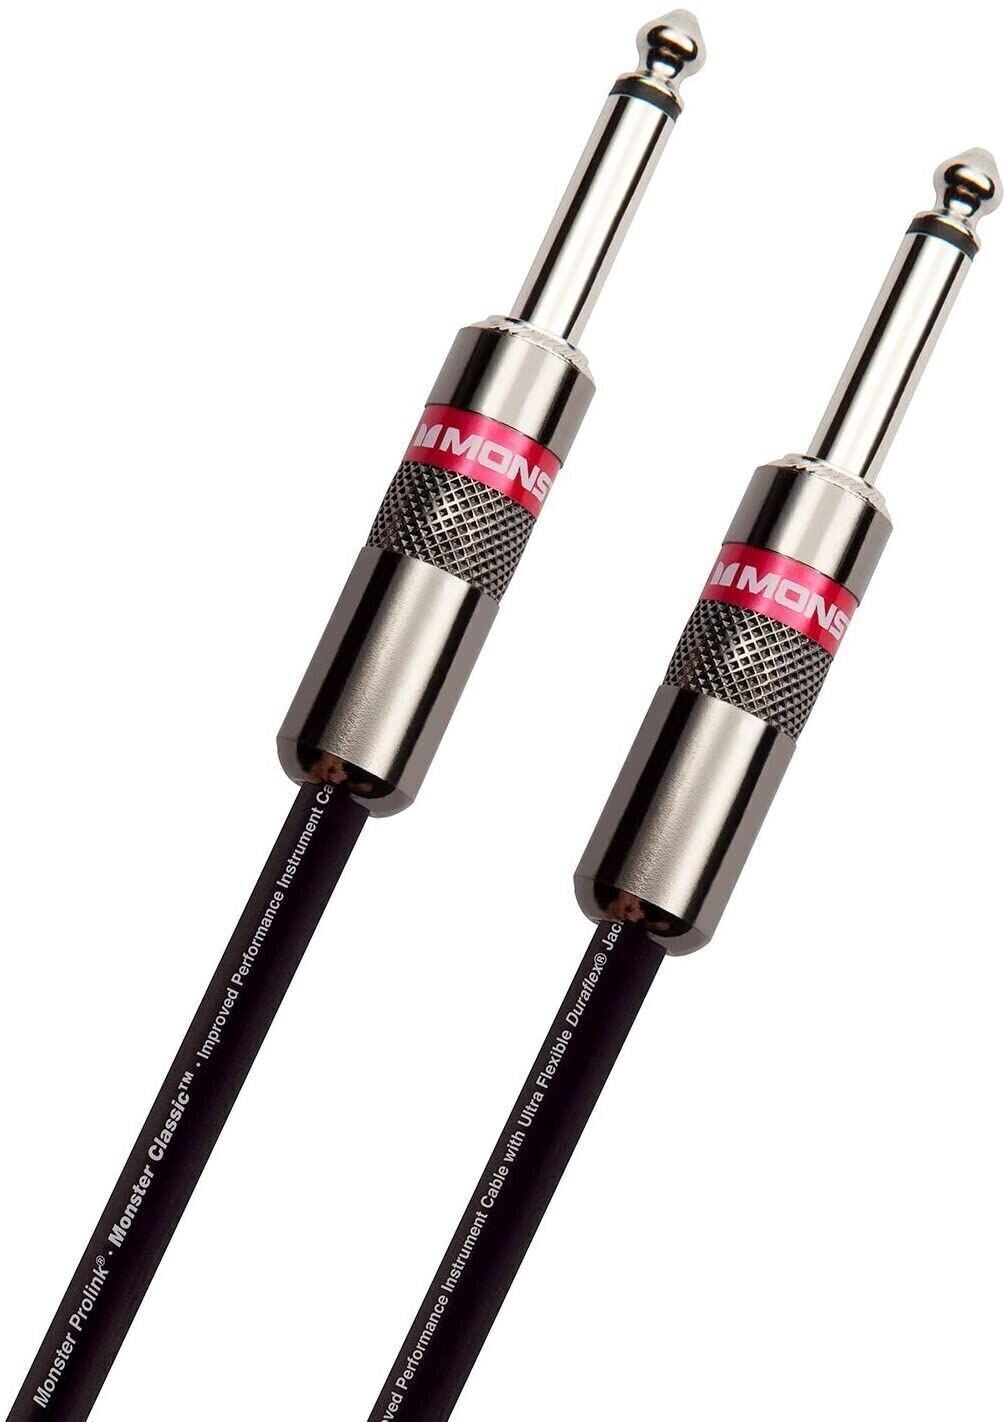 Καλώδιο Μουσικού Οργάνου Monster Cable Prolink Classic 12FT Instrument Cable Μαύρο χρώμα 3,6 m Ευθεία - Ευθεία